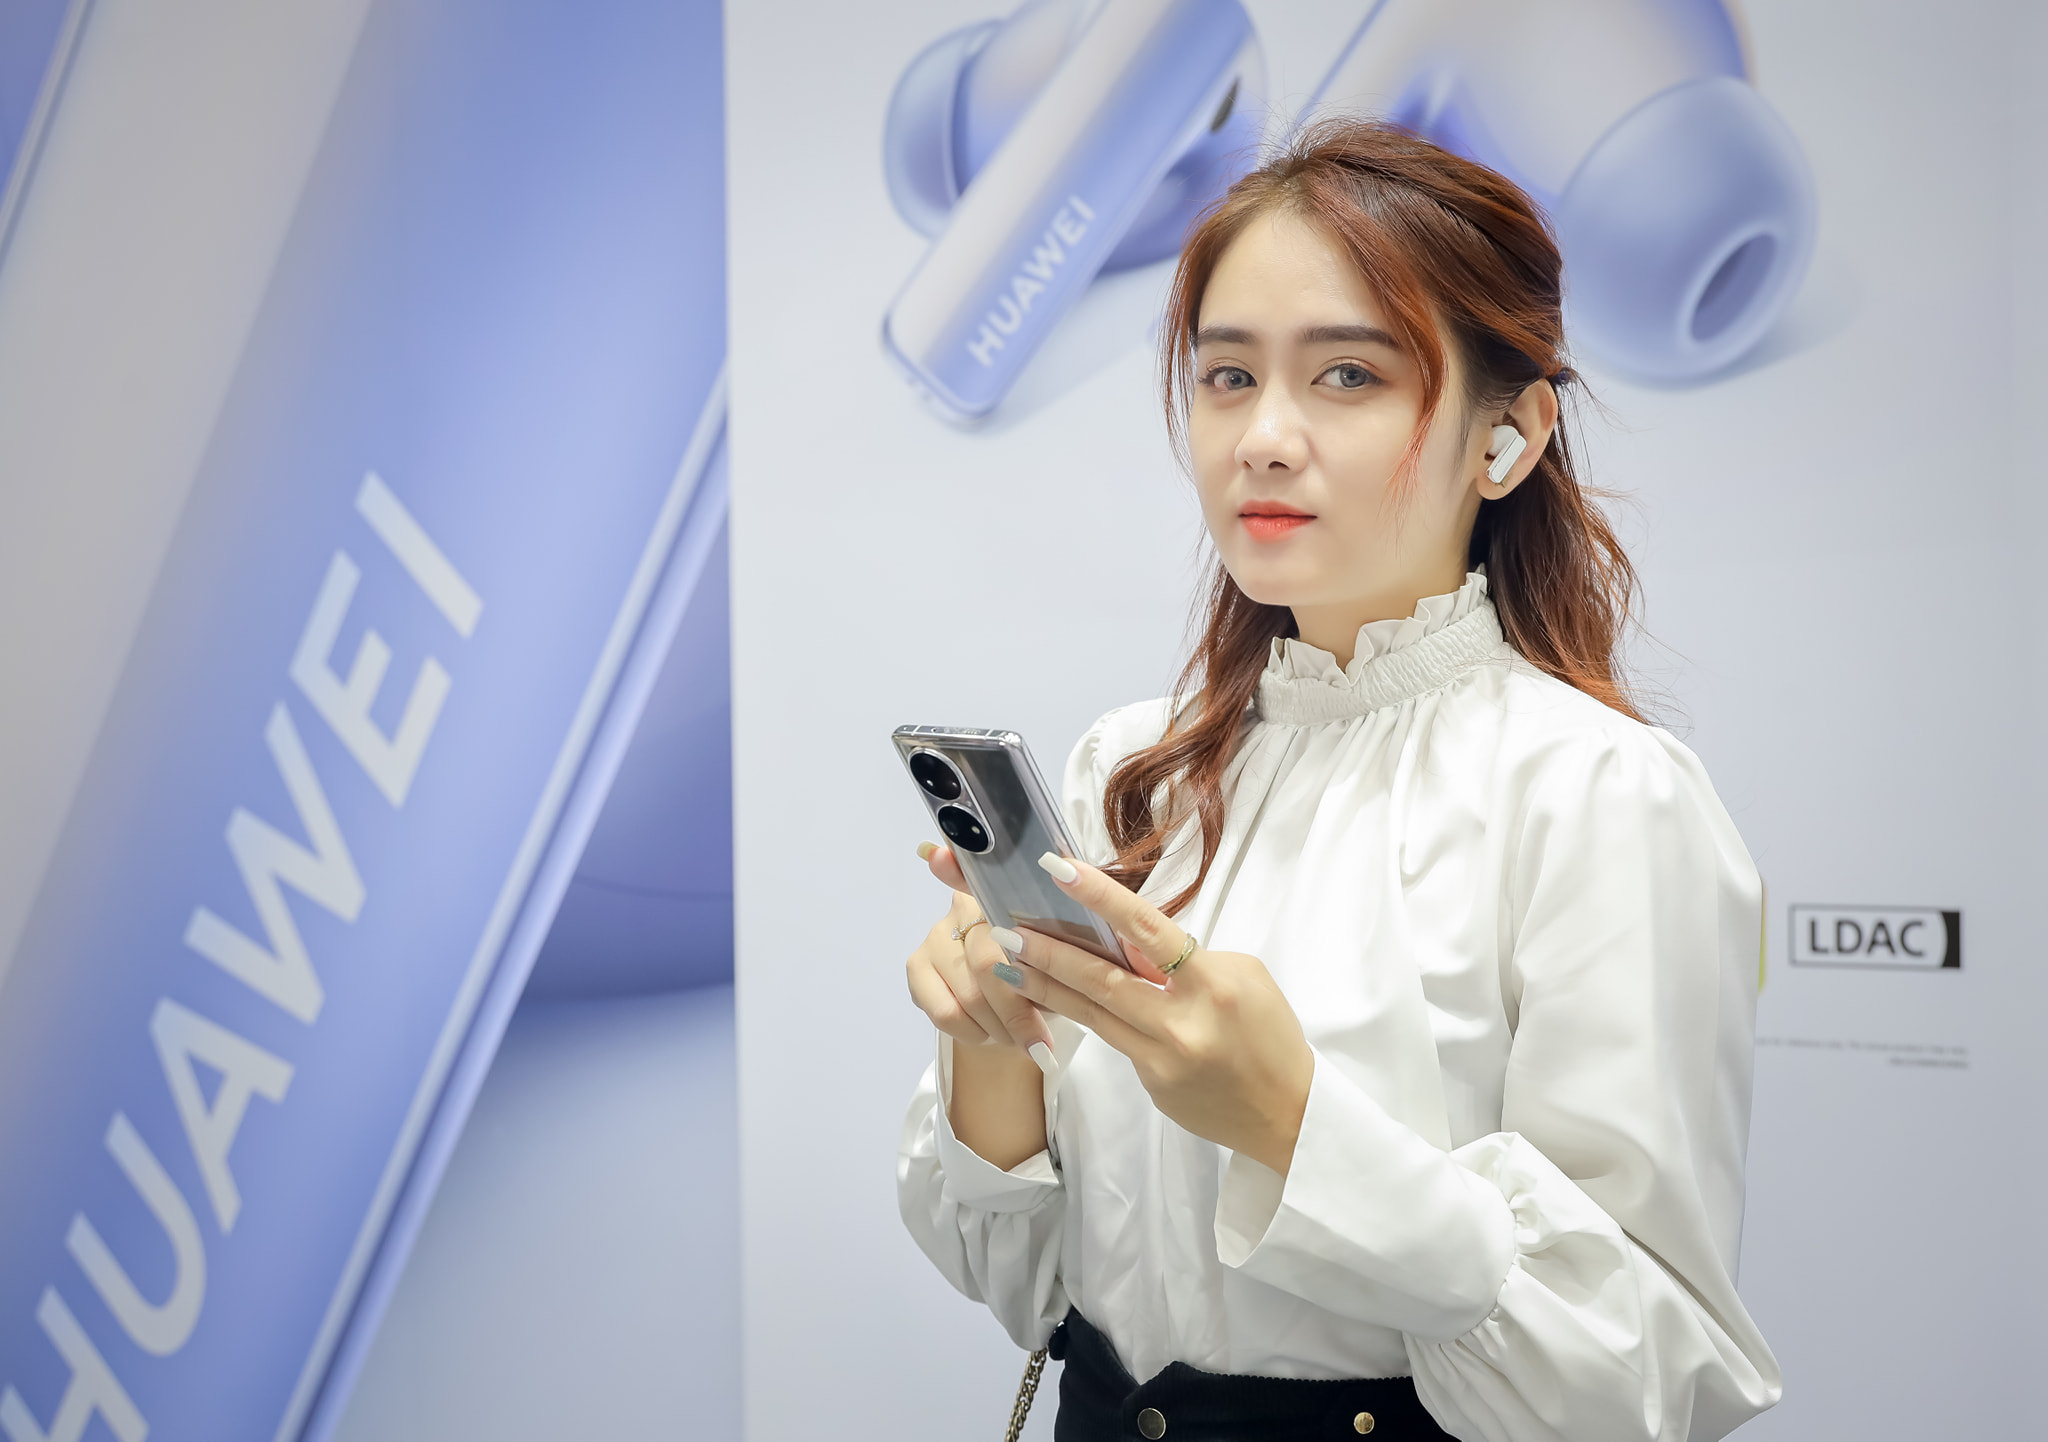 Huawei trình làng loạt sản phẩm mới tại Thái Lan